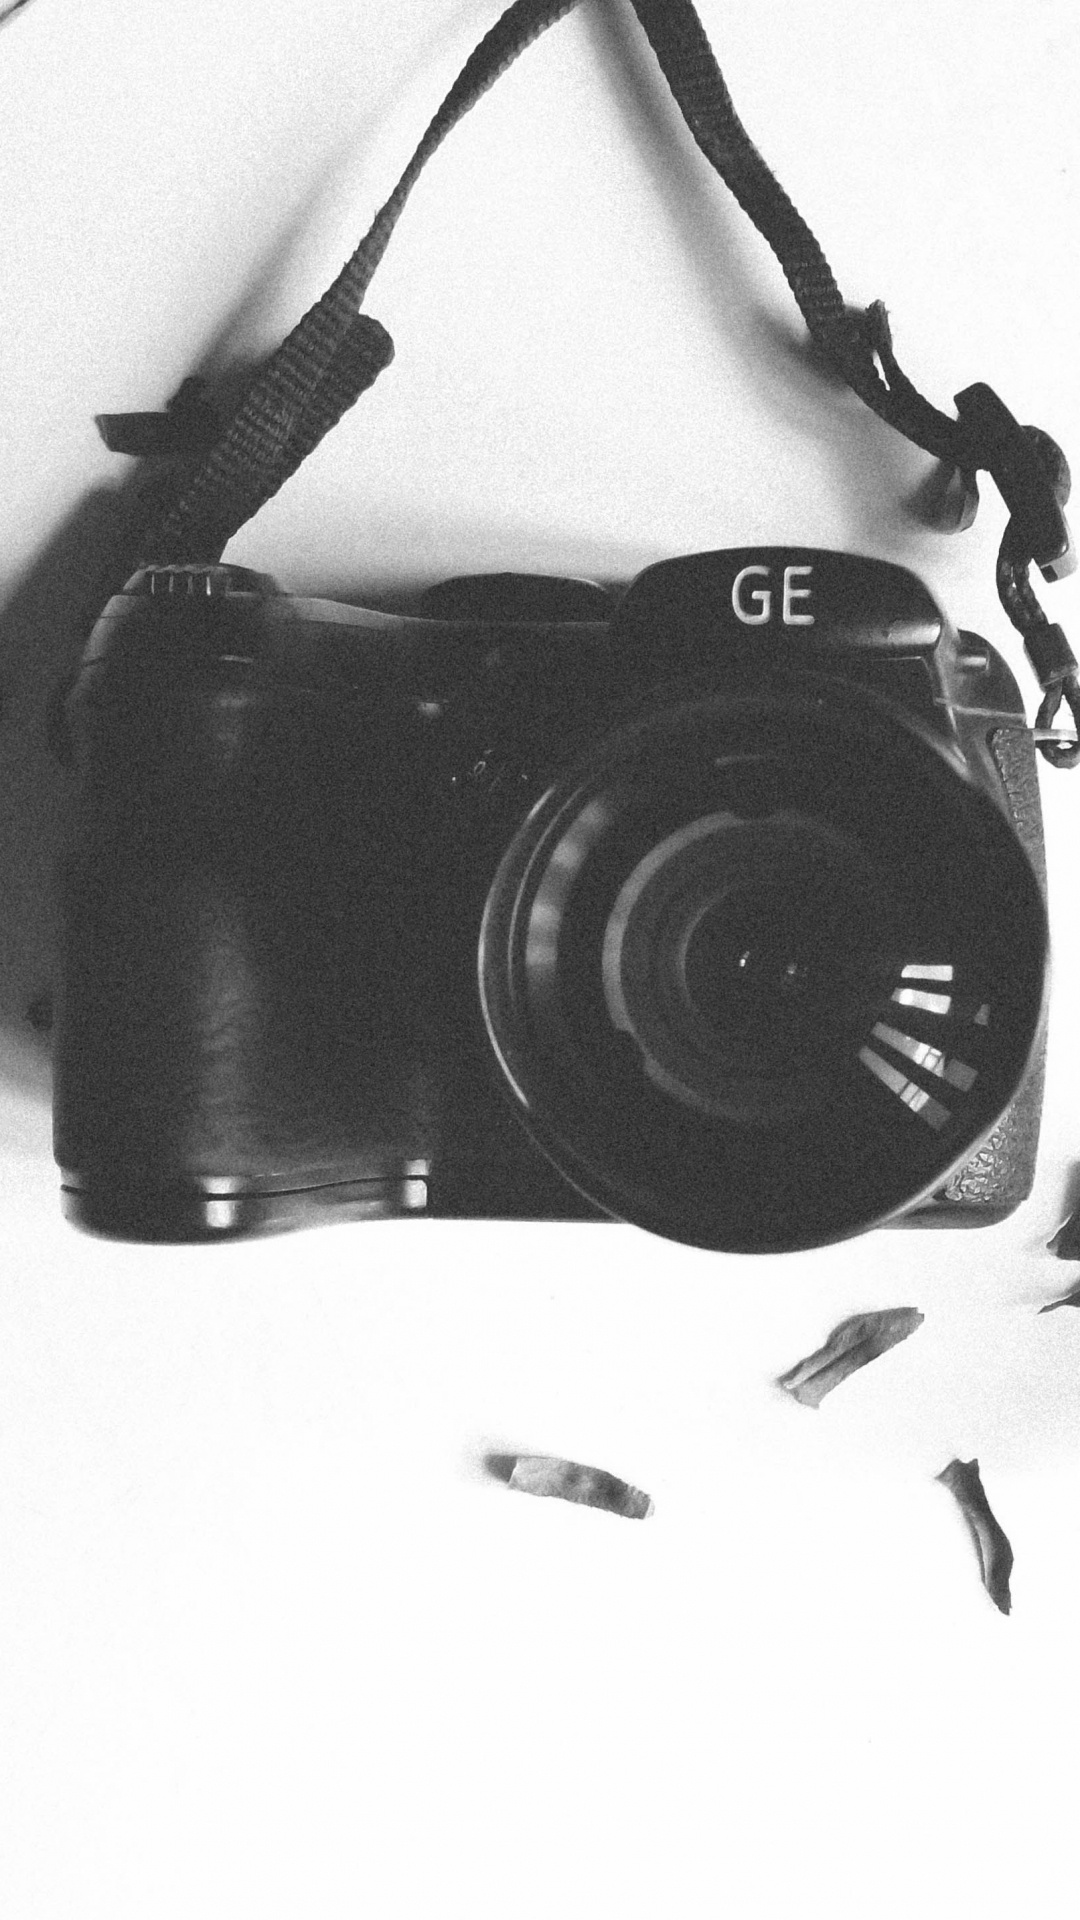 Schwarze Nikon Dslr Kamera Auf Weißem Textil. Wallpaper in 1080x1920 Resolution